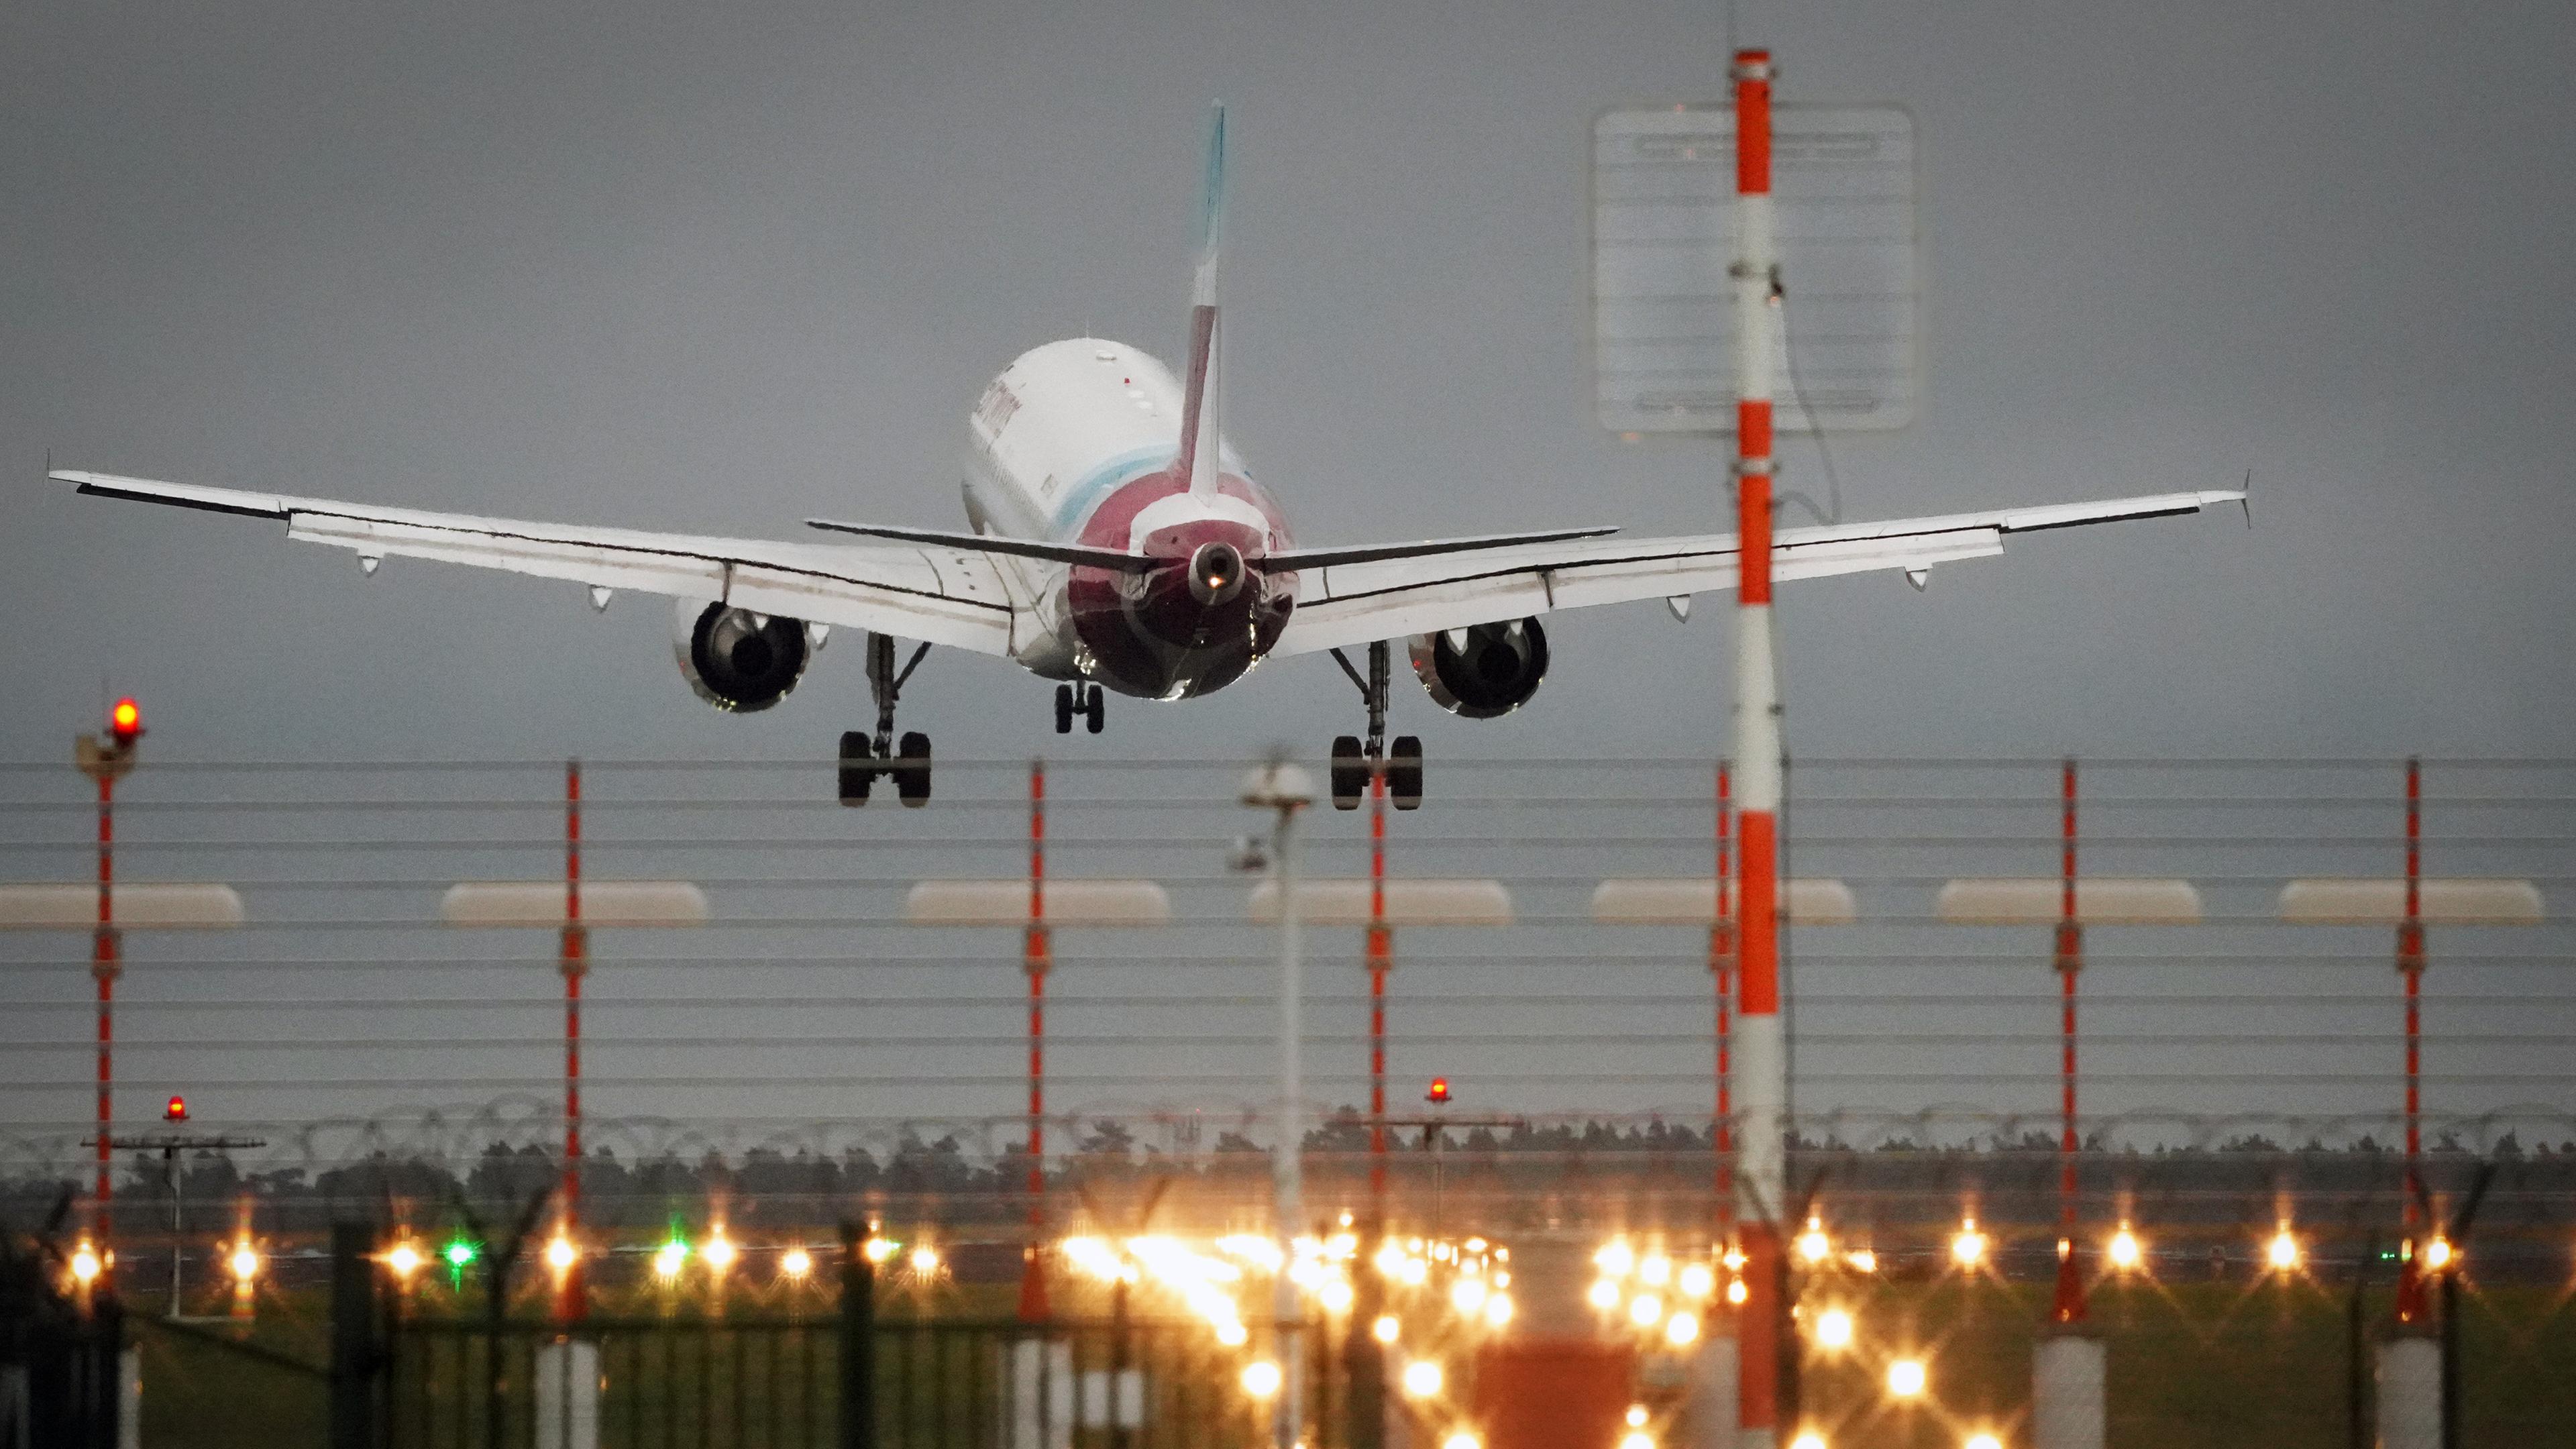 Ein Passagierflugzeug landet abends auf einer beleuchteten Startbahn.